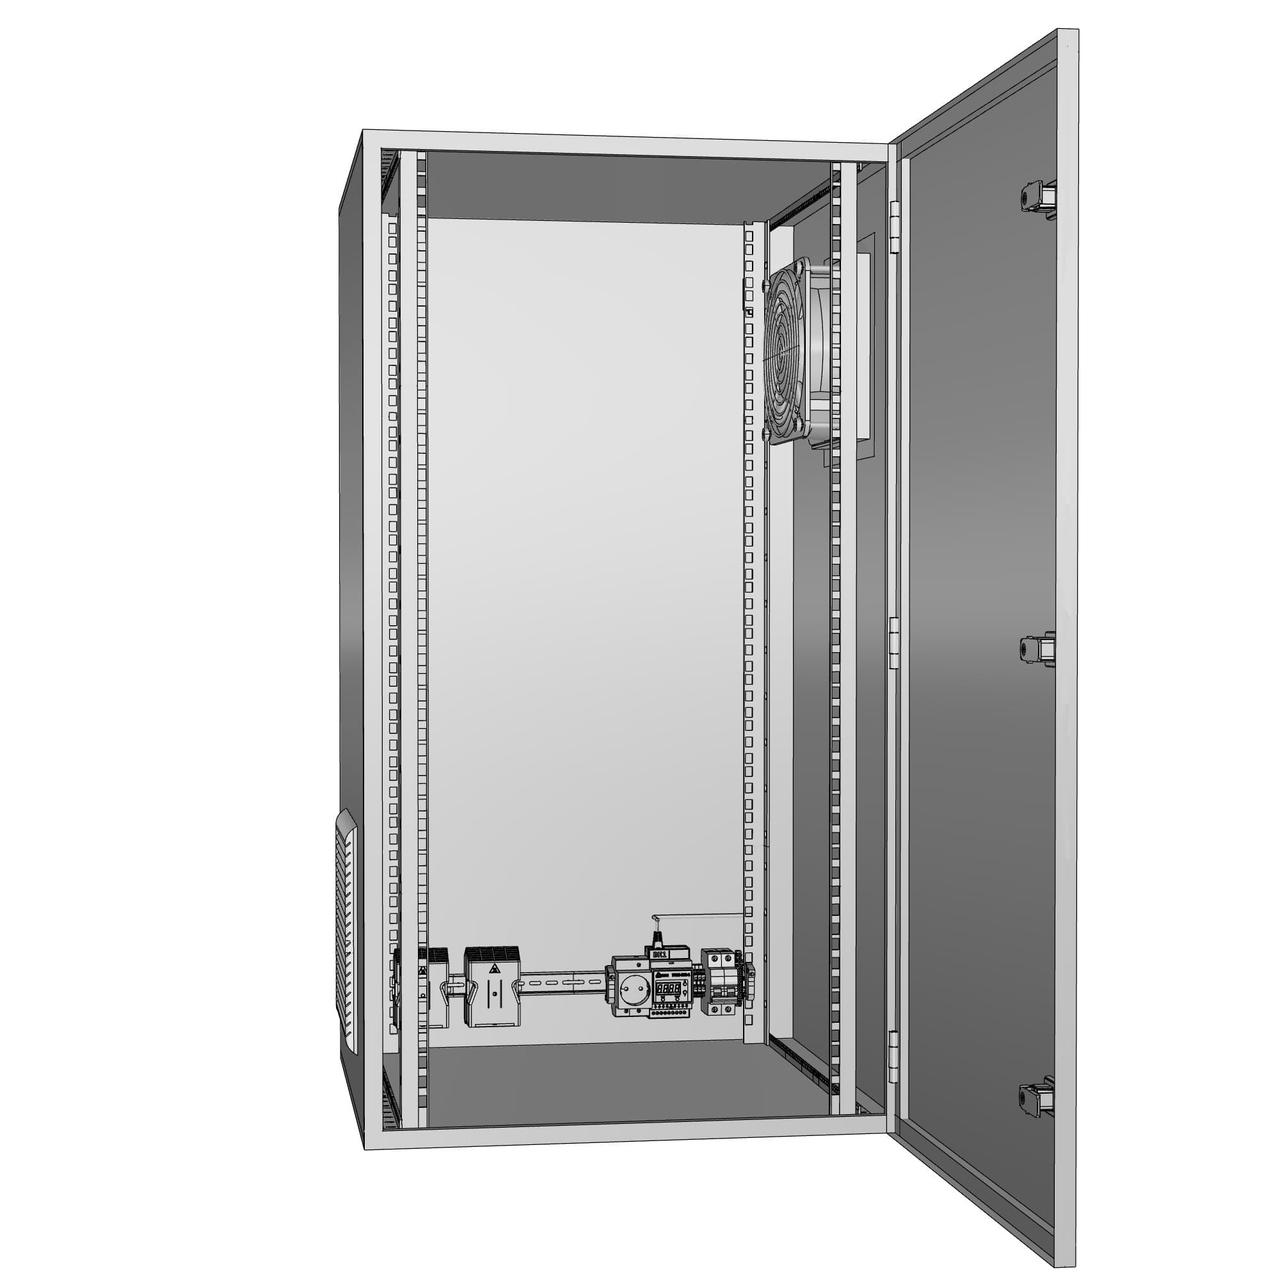 Шкаф климатический утеплённый с вентиляцией ЩКу- В- 2 - 500×400×250 (В×Ш×Г) IP65